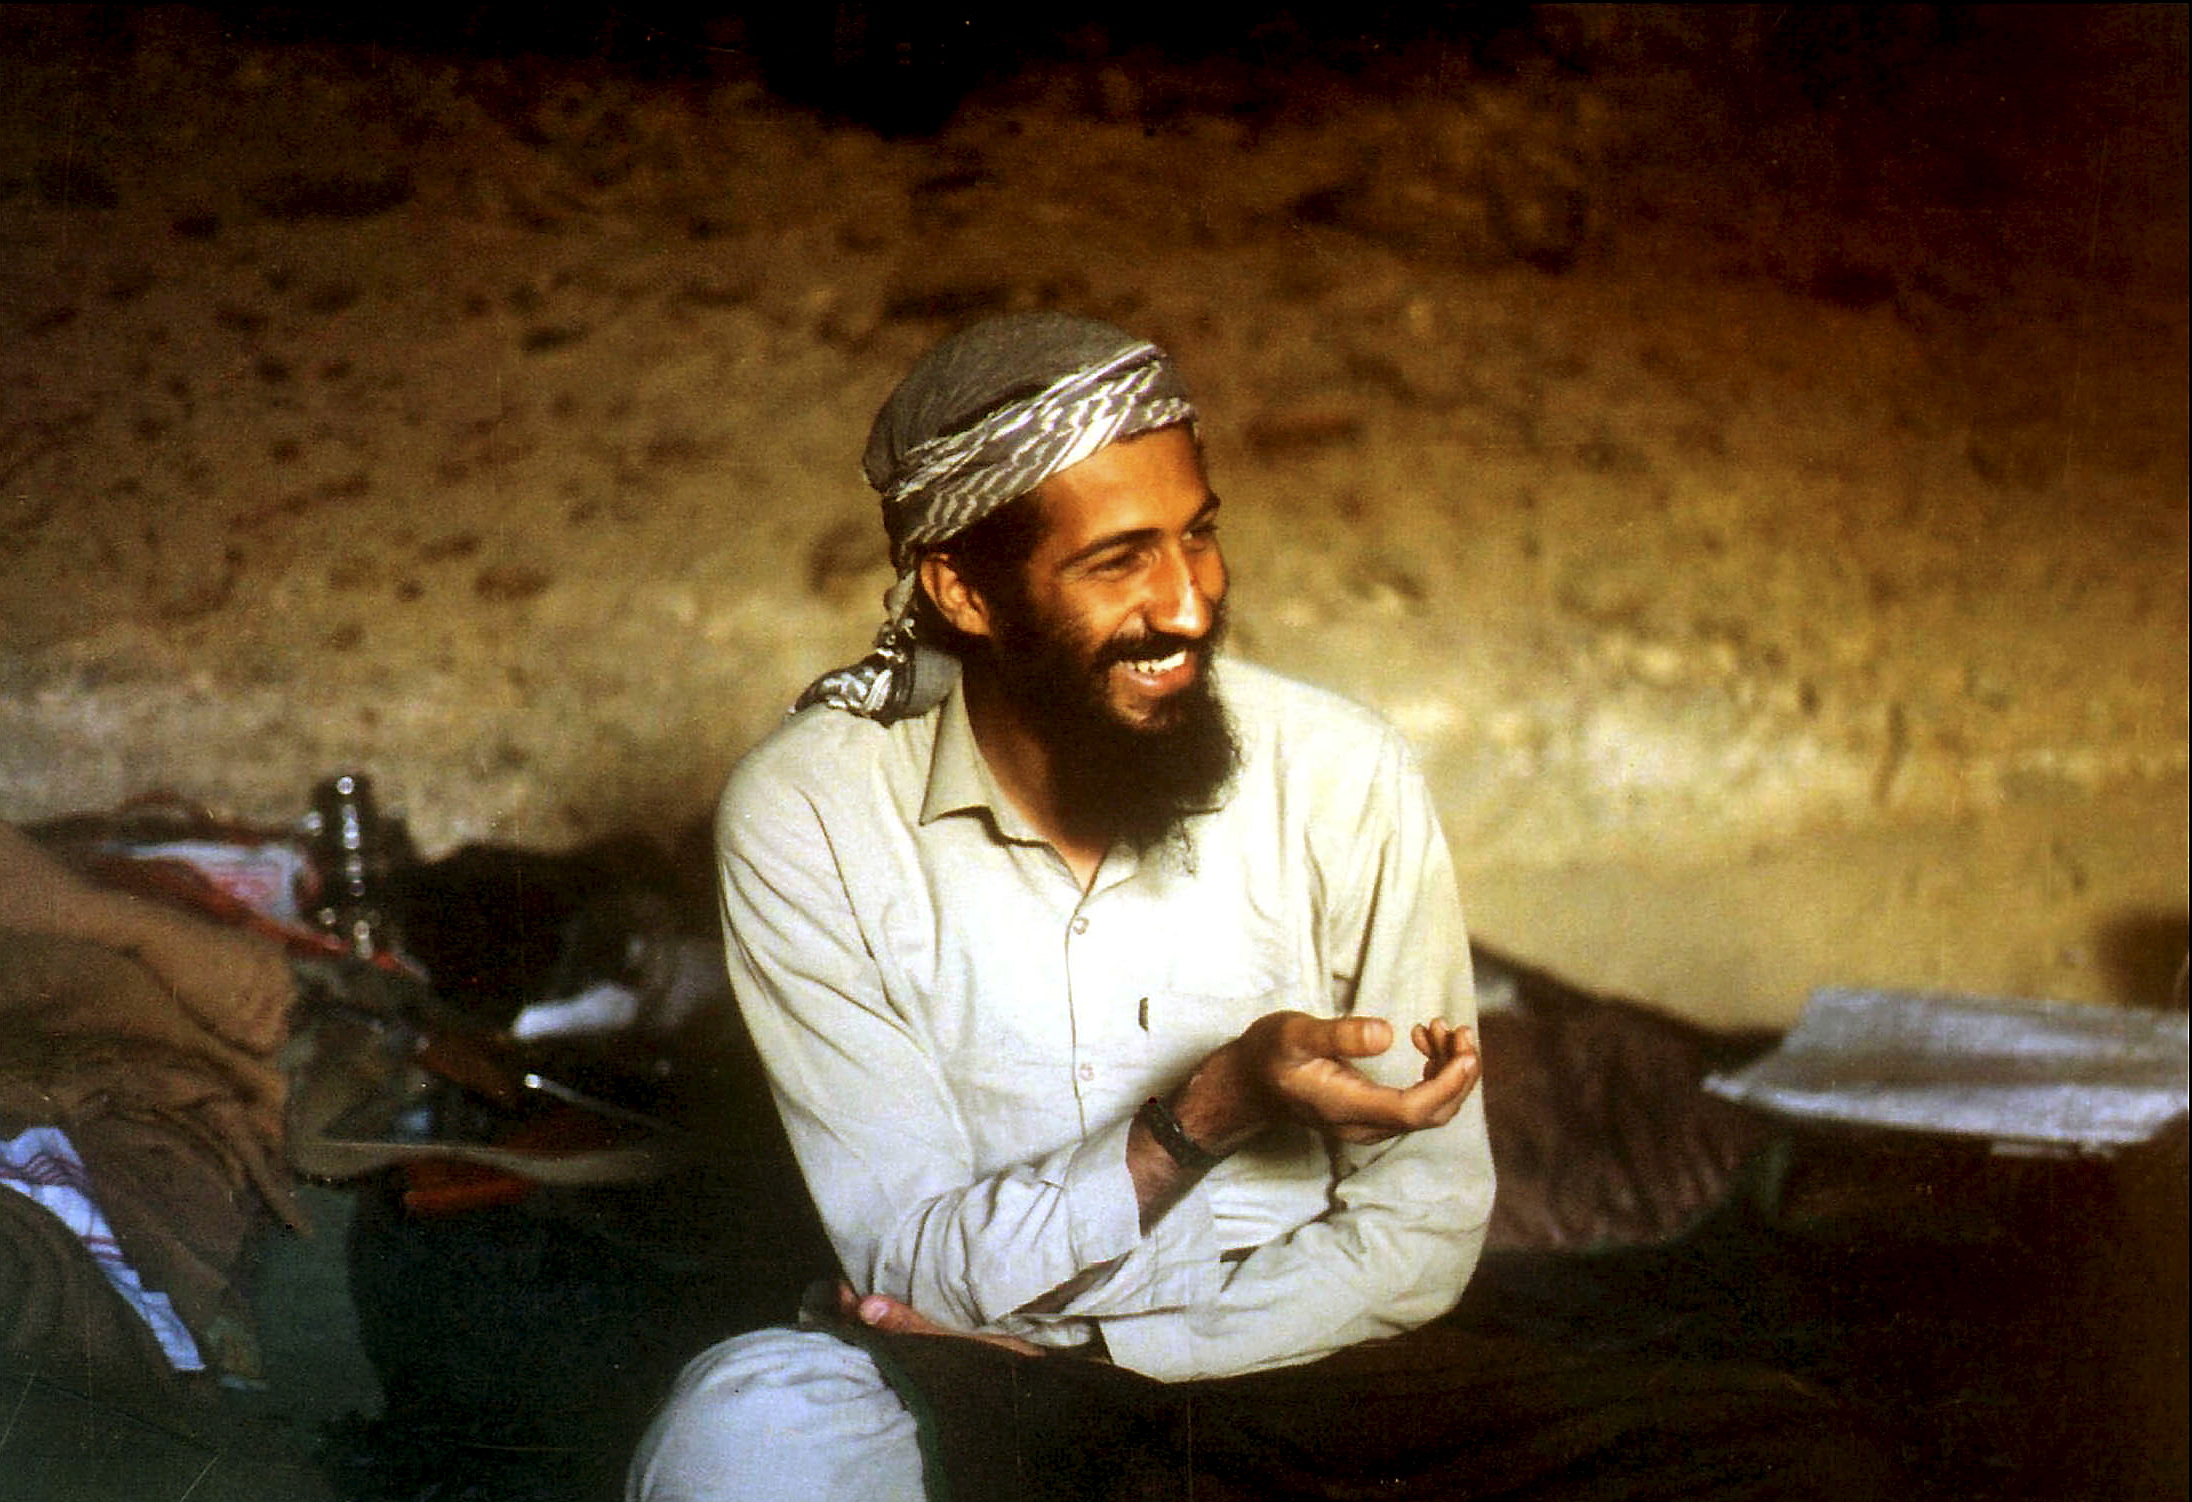 Amerikai szövetségesből könyörtelen mészáros: 65 éves lenne Oszáma bin Láden  - Blikk